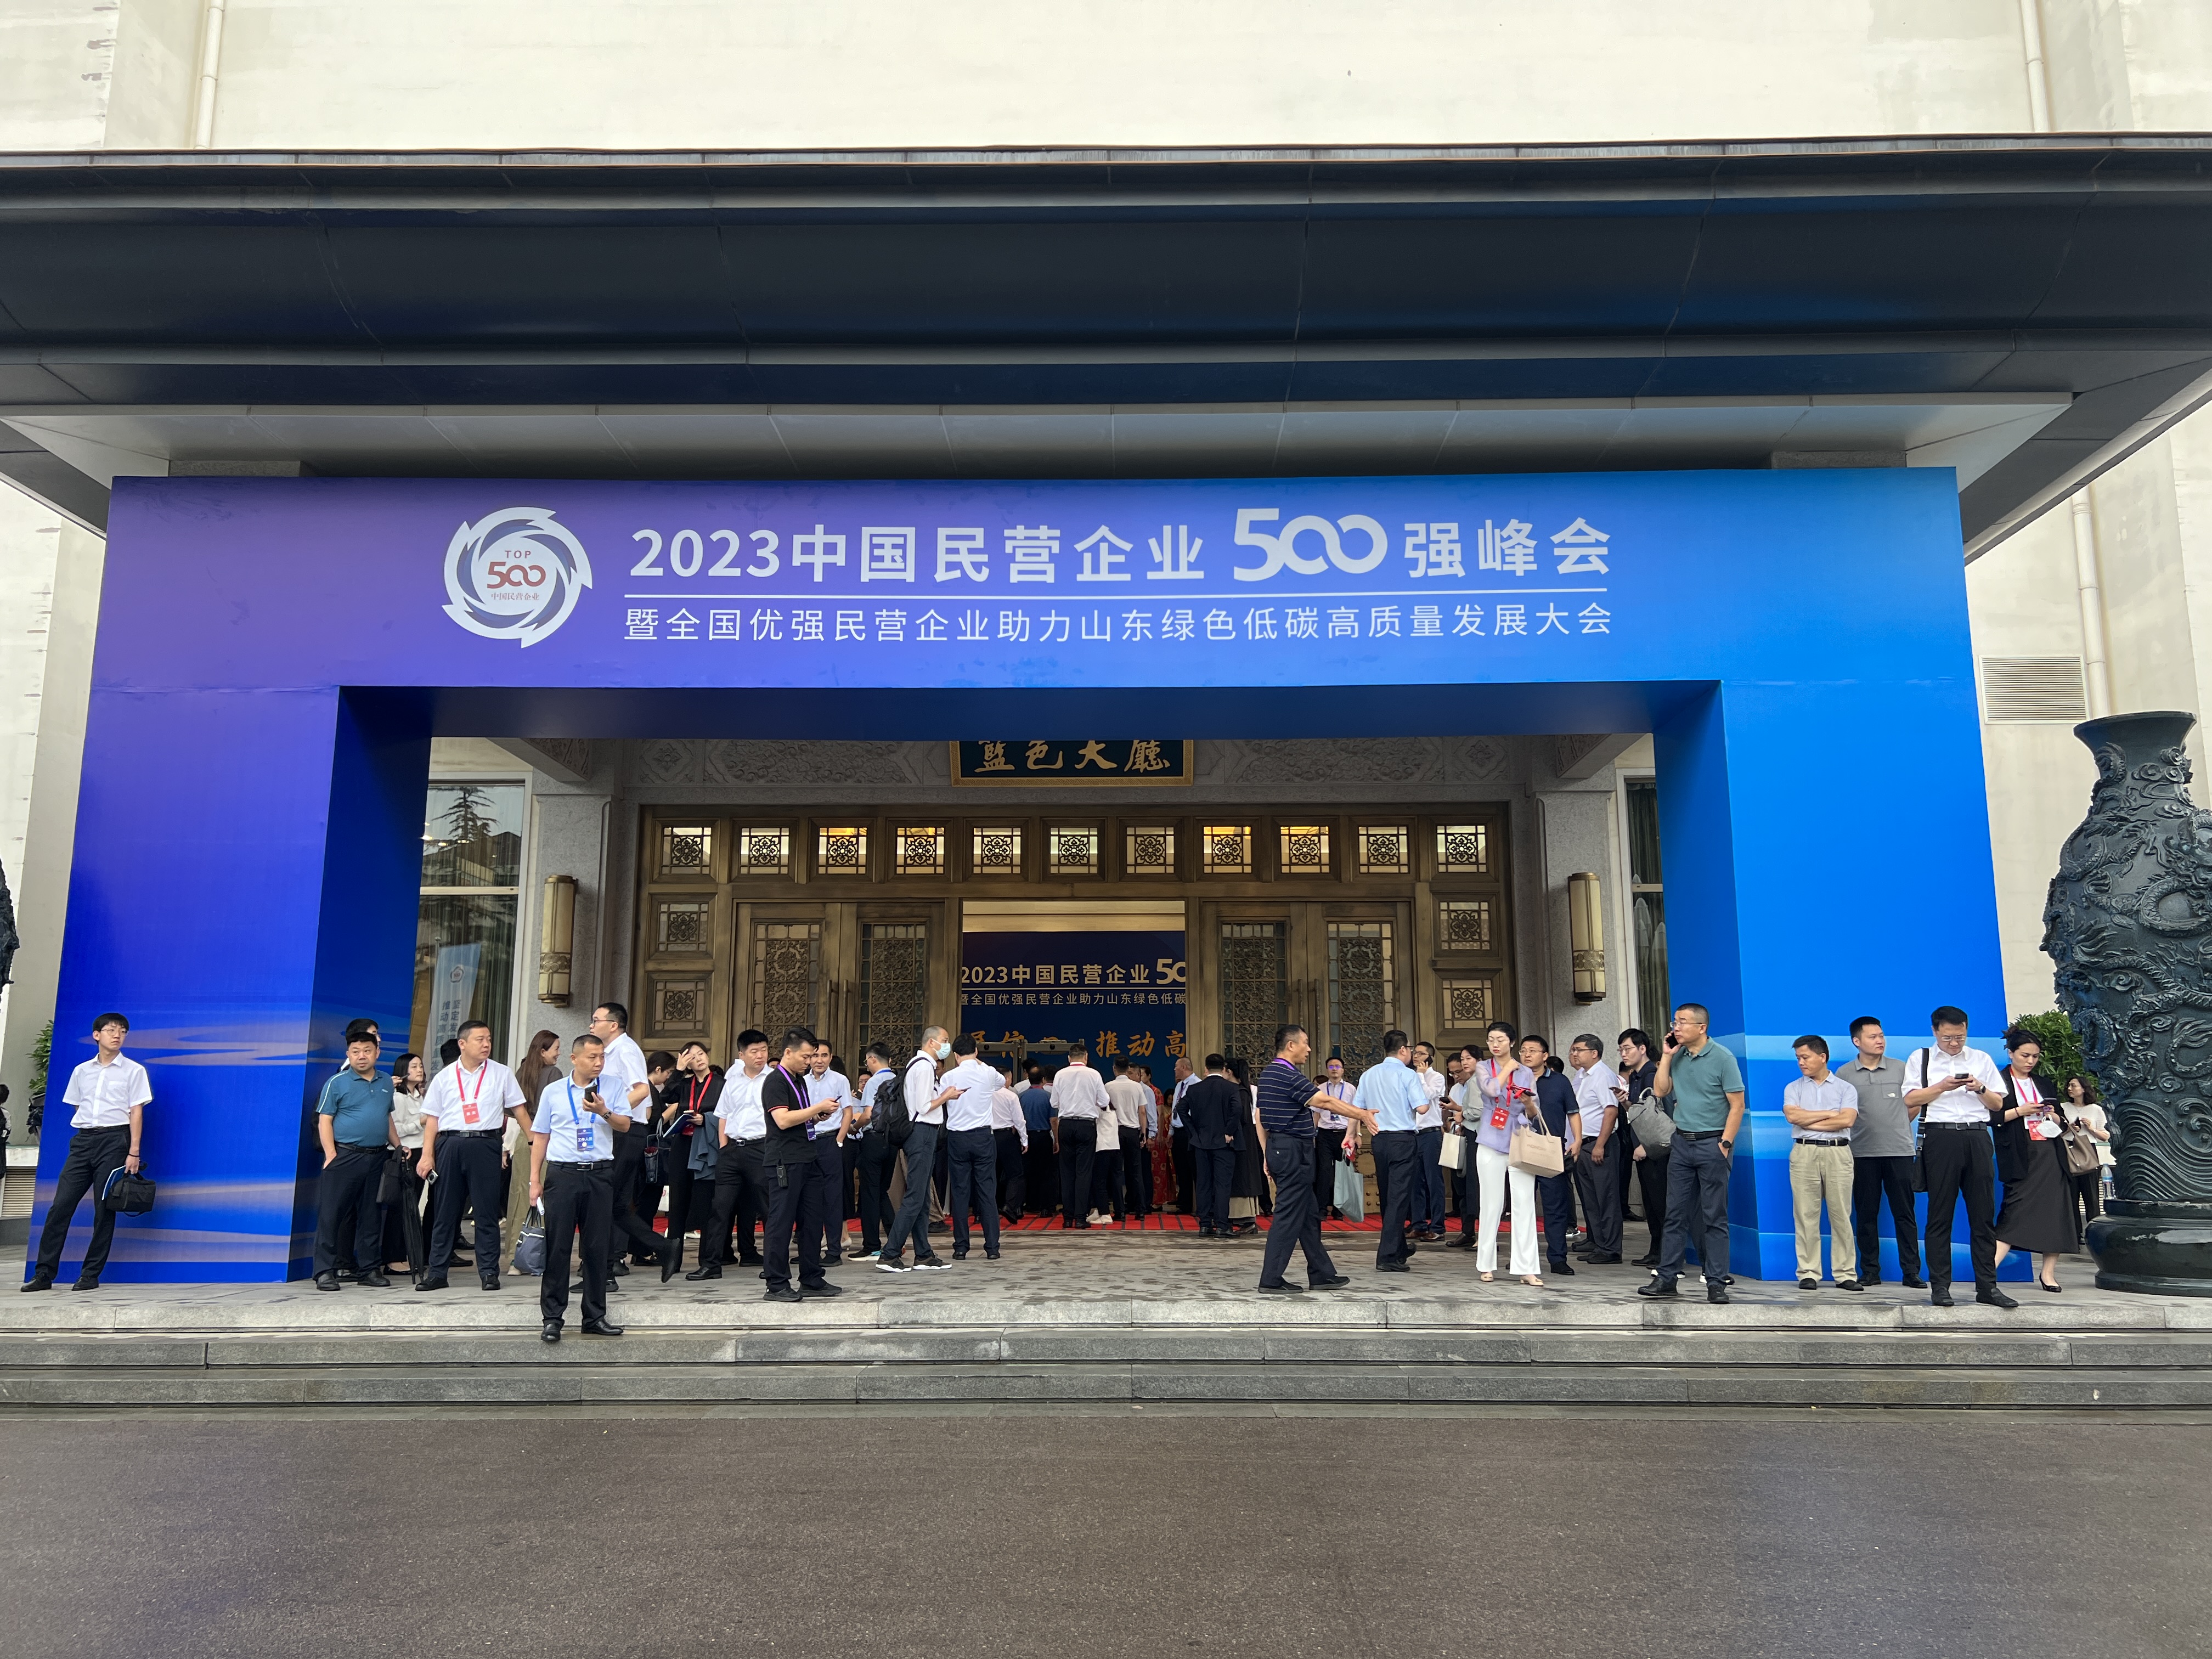 2023中國民營企業500強峰會在山東濟南舉行